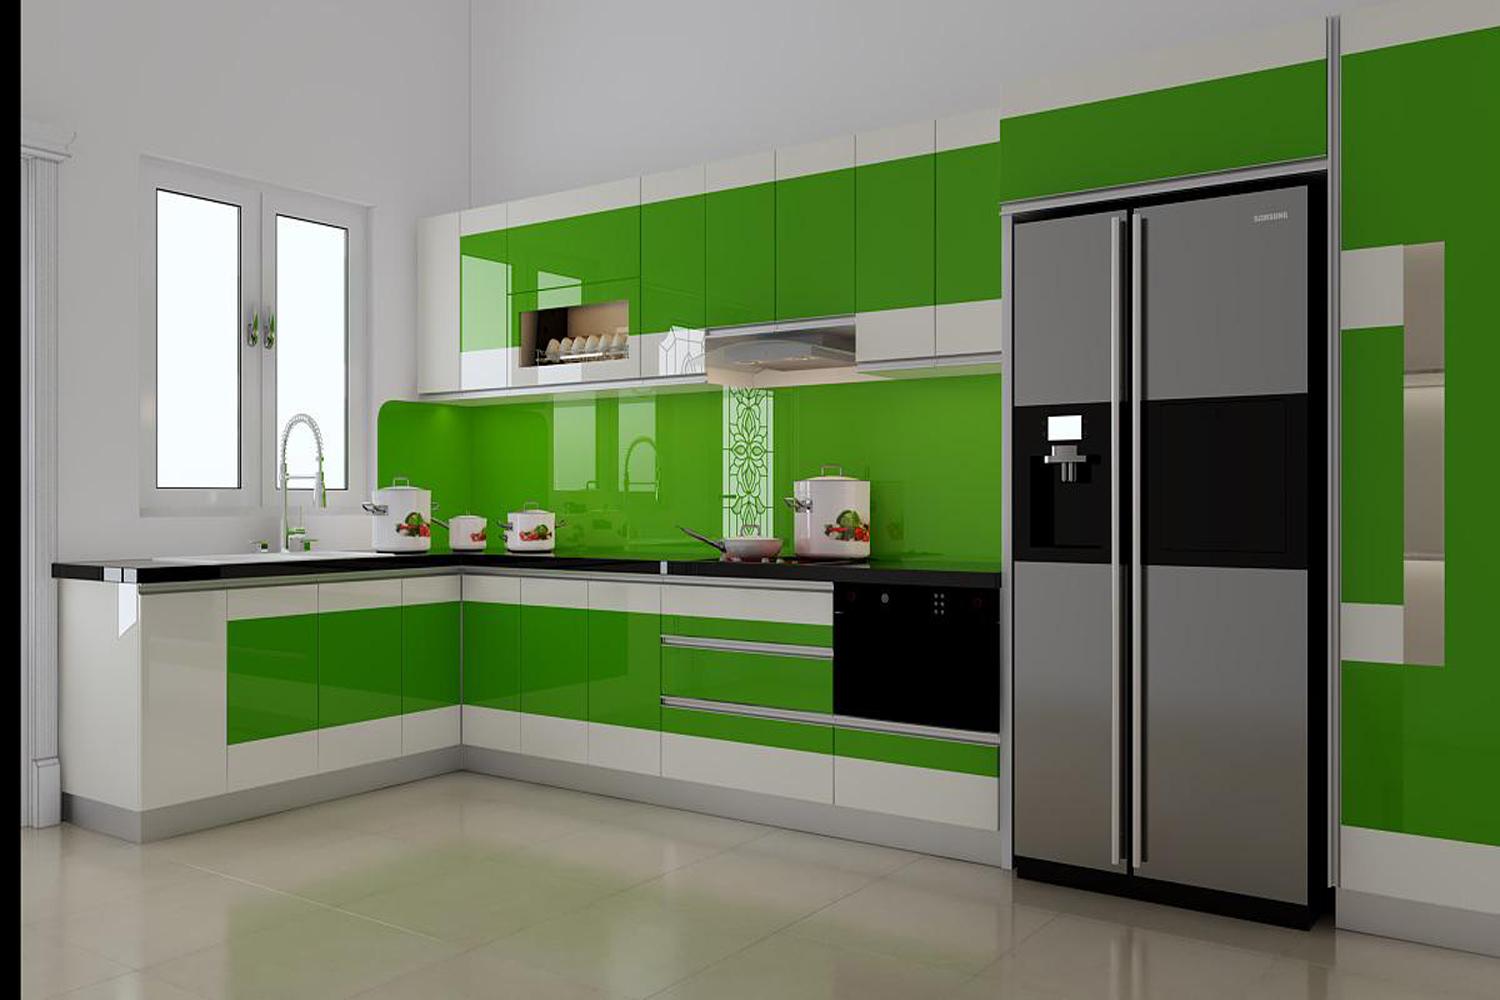 Mẫu tủ bếp màu xanh lá cây nhựa PVC chữ l Xuyên Việt 5